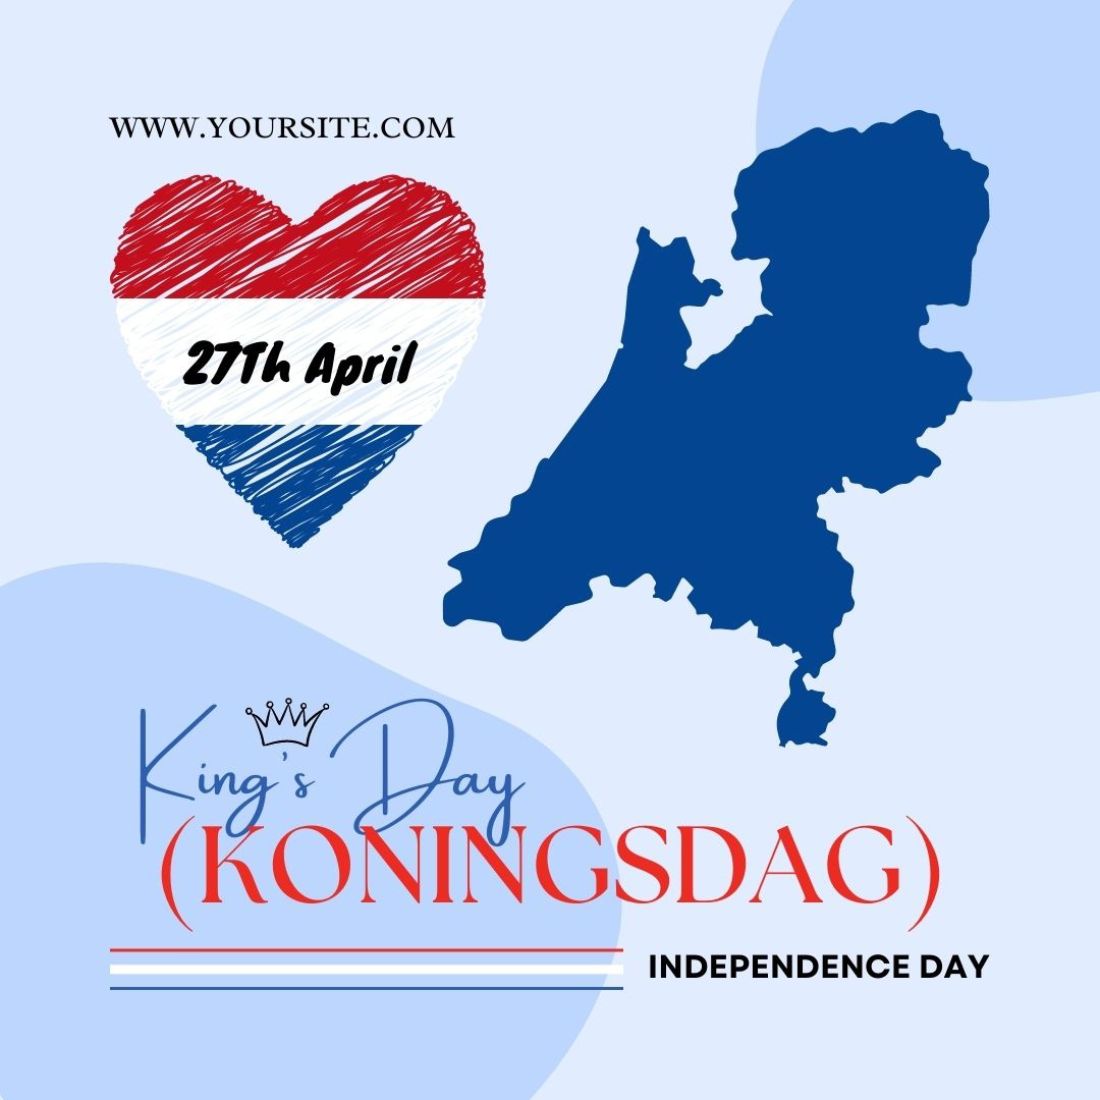 Kings Day Koningsdag Instagram Template cover image.